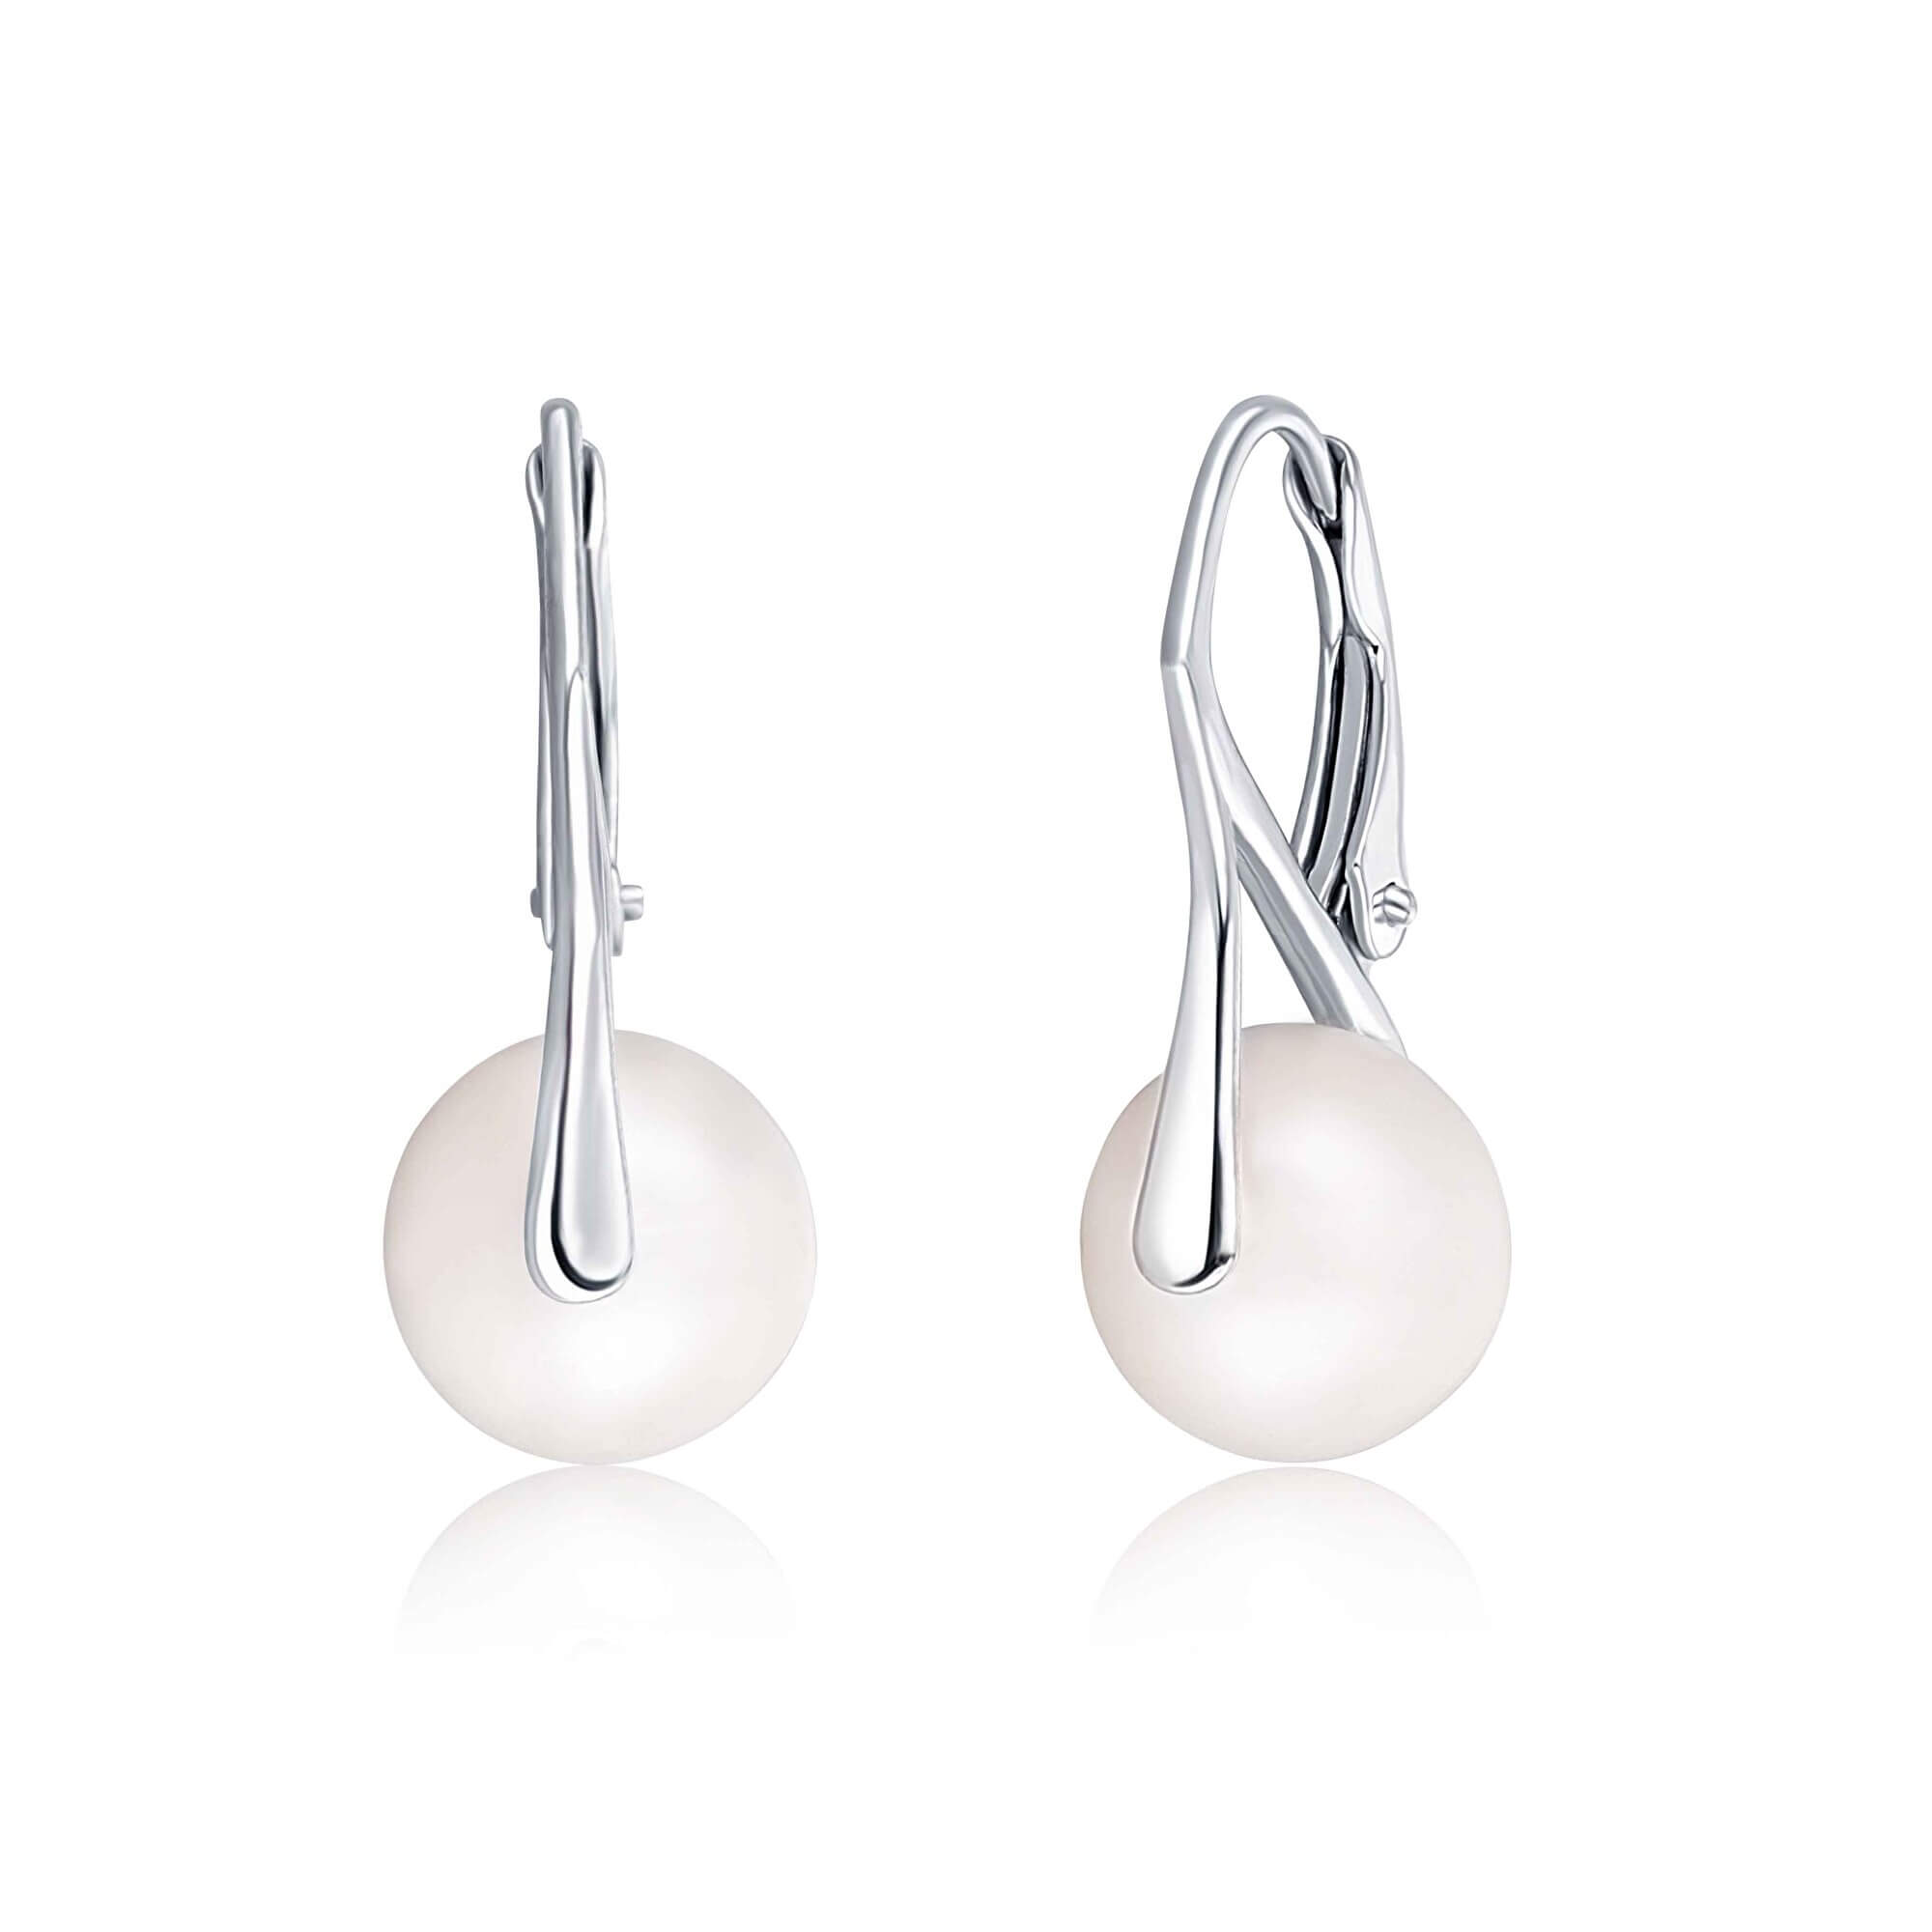 JwL Luxury Pearls Stříbrné náušnice s pravými perlami JL0613